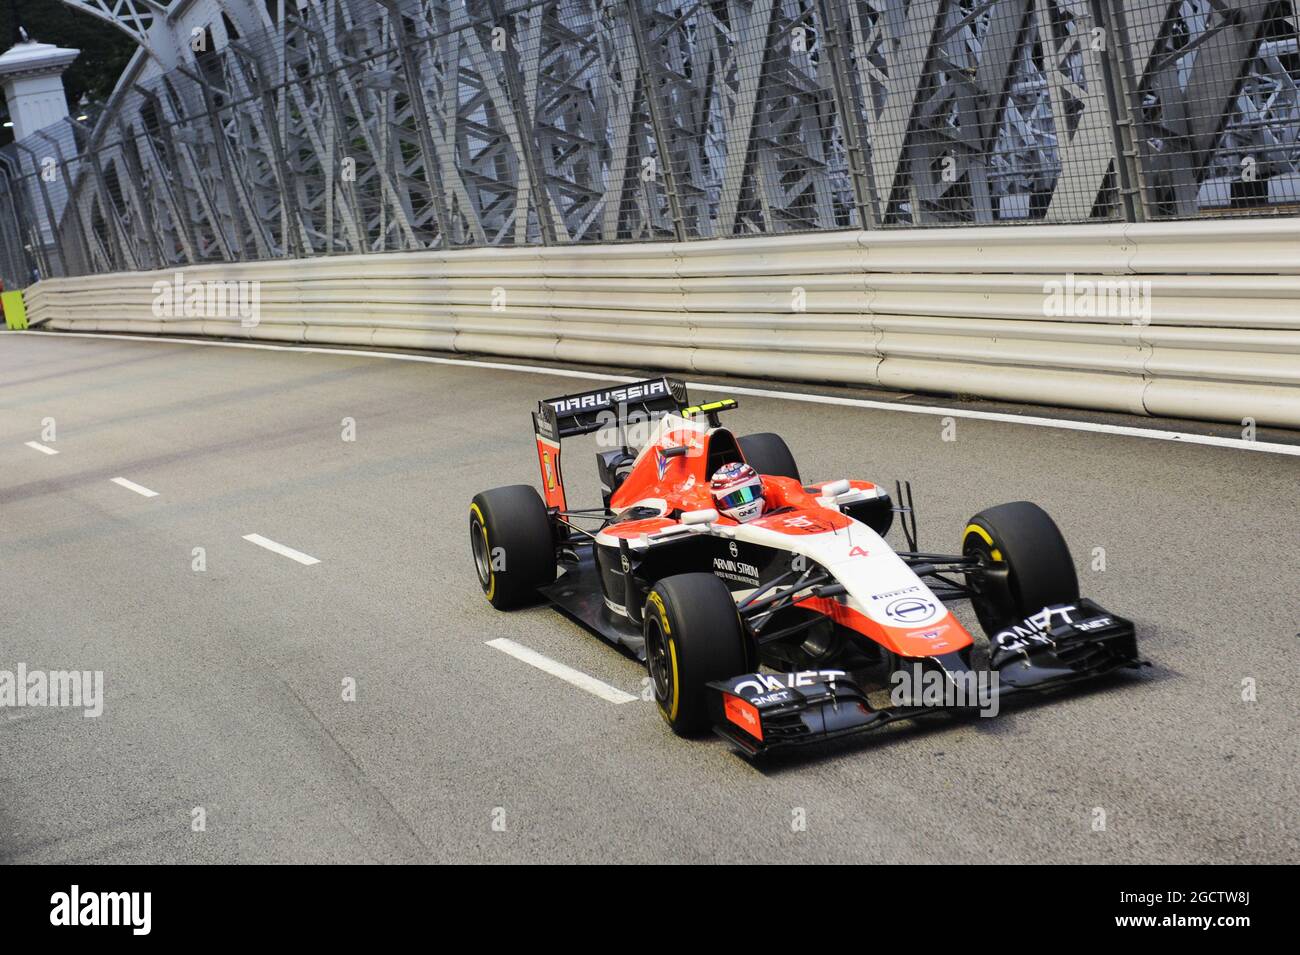 Max Chilton (GBR) Marussia F1 Team MR03. Gran Premio di Singapore, sabato 20 settembre 2014. Circuito Marina Bay Street, Singapore. Foto Stock